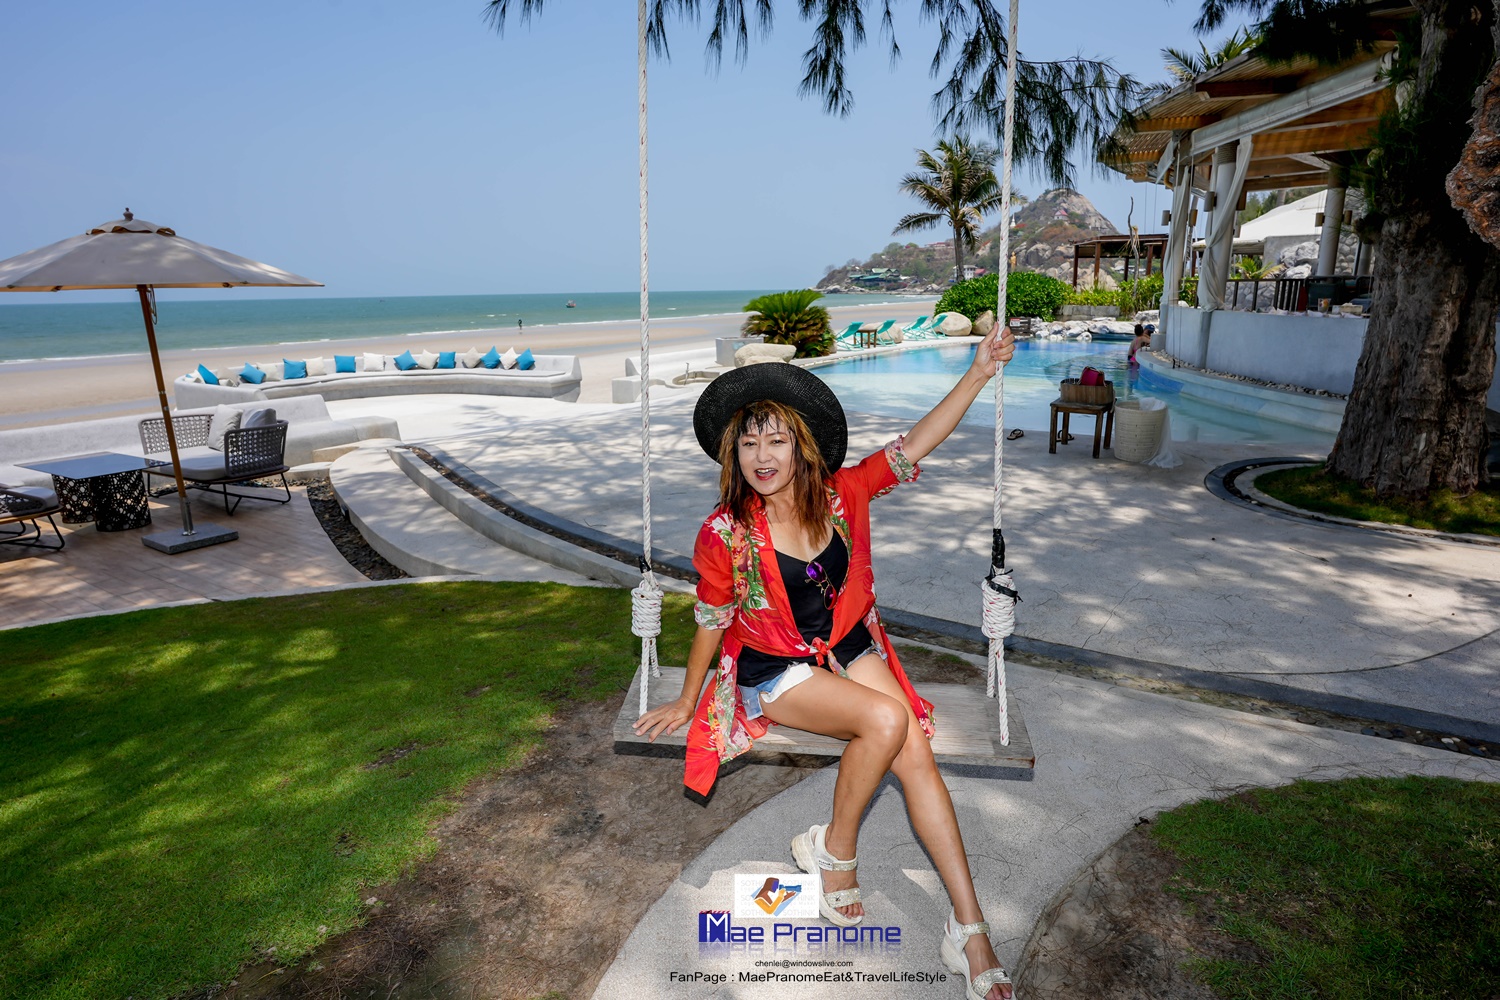 . รีวิว โรงแรม กุณดาลา บีช รีสอร์ท หัวหิน Kundala Beach Resort Hua Hin กับแม่ประนอม จ้า - Pantip